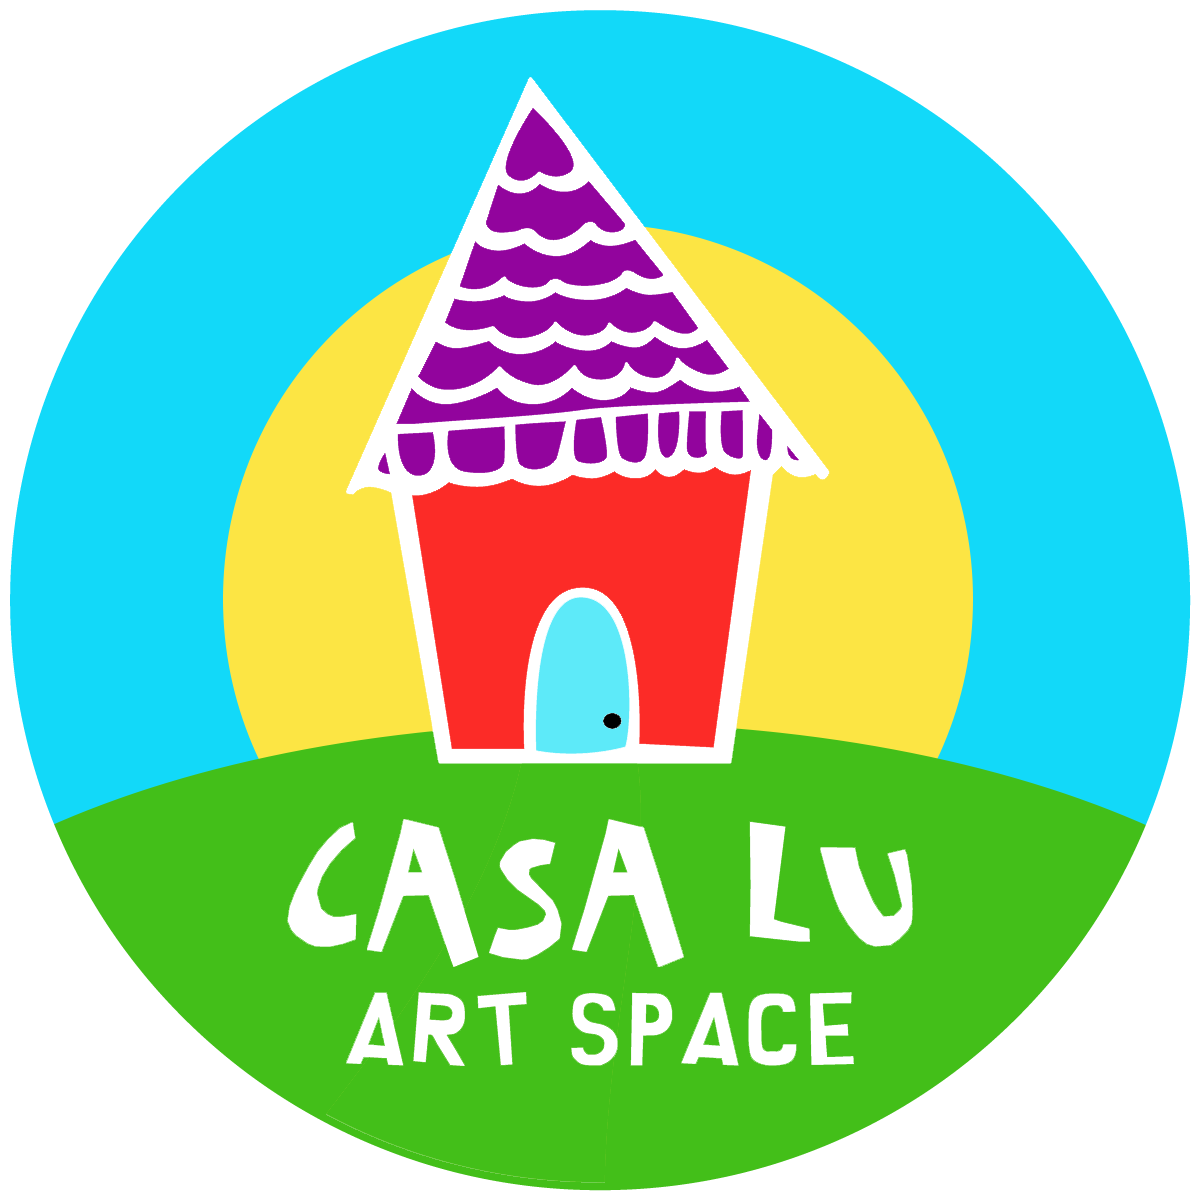 Casa Lu Art Space